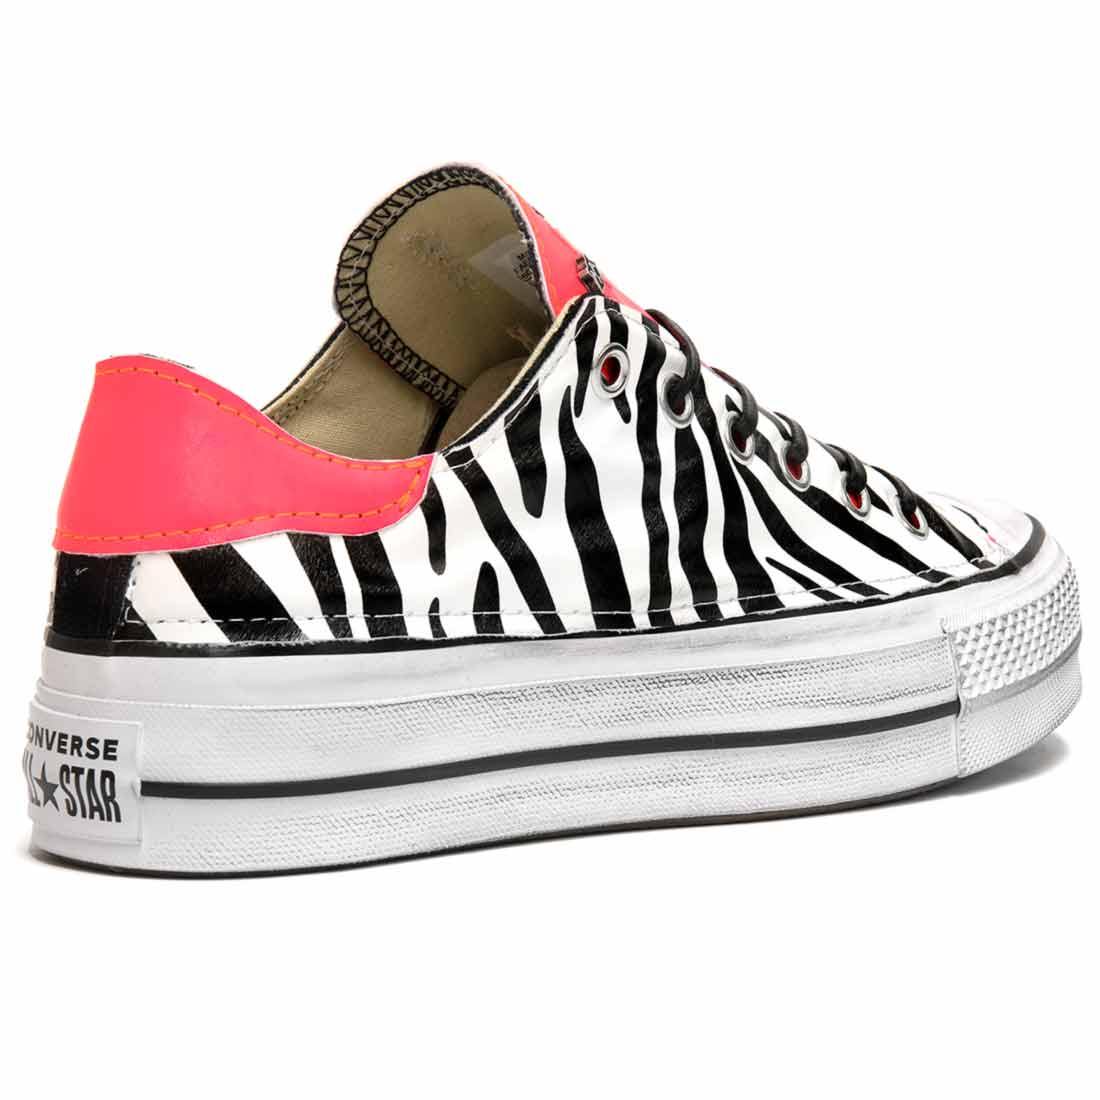 sneakers converse all star basse  personalizzate zebra e rosa effetto fluo